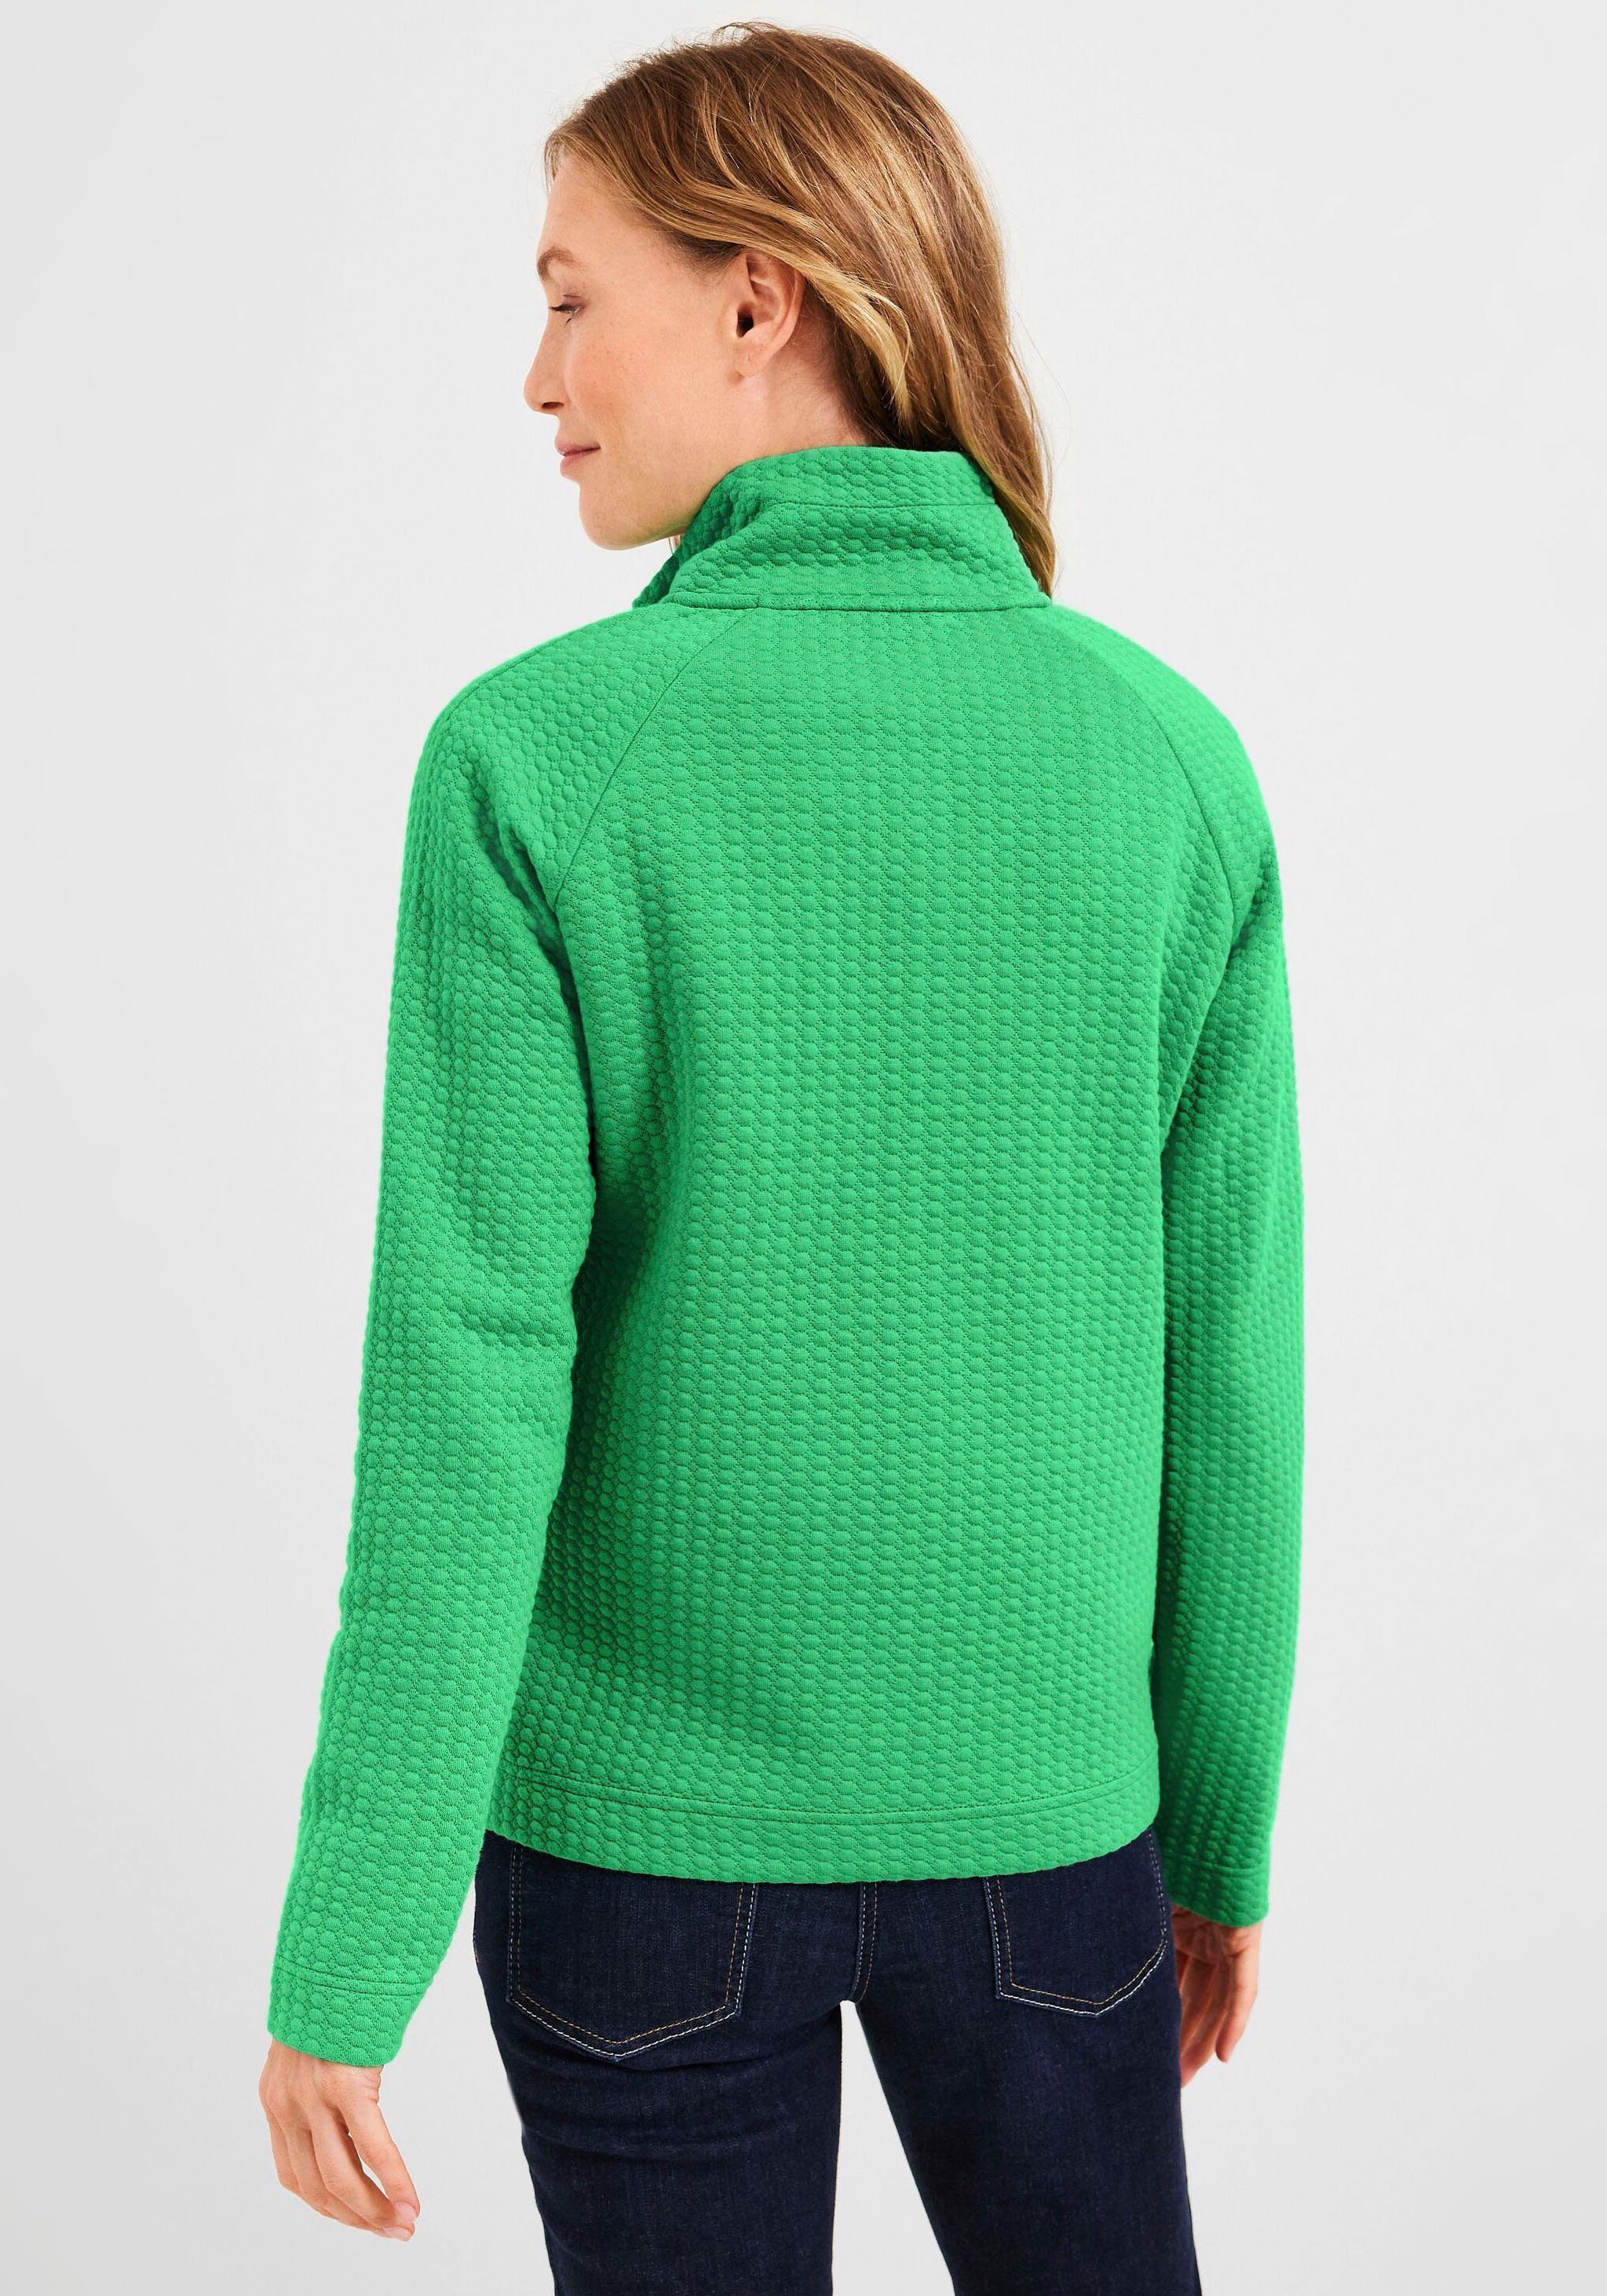 Struktur Sweater smash Cecil green moderner in